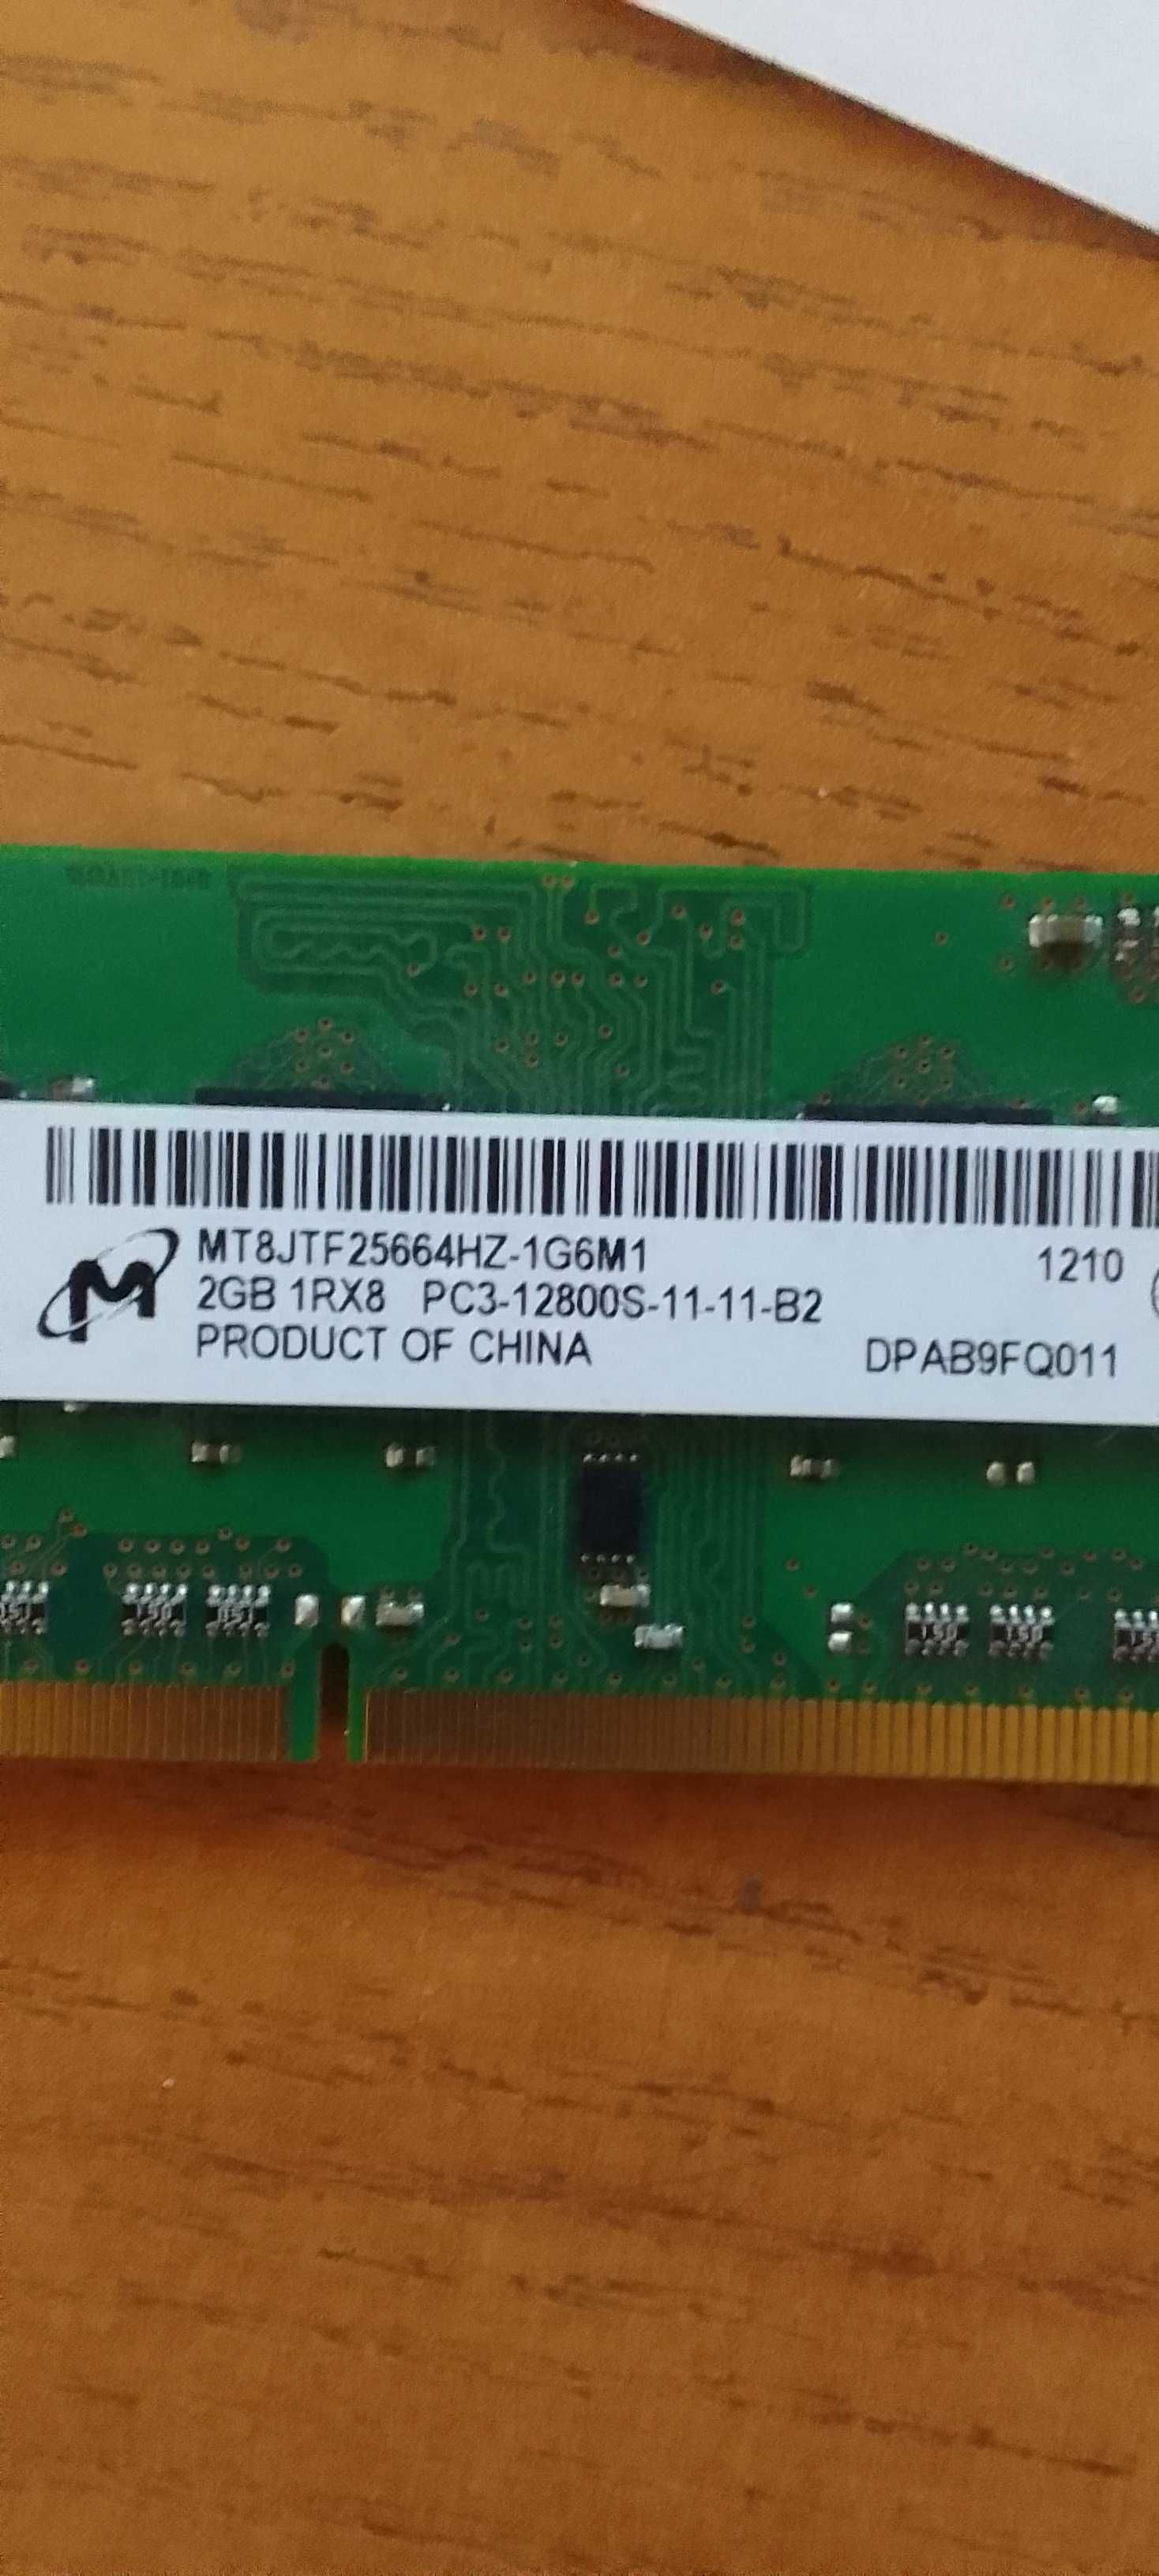 ОЗУ ноутбука  MT8JTF25664HZ-1G6M1 2GB 1RX8 PC3-12800S-11-11-B2 (2шт)